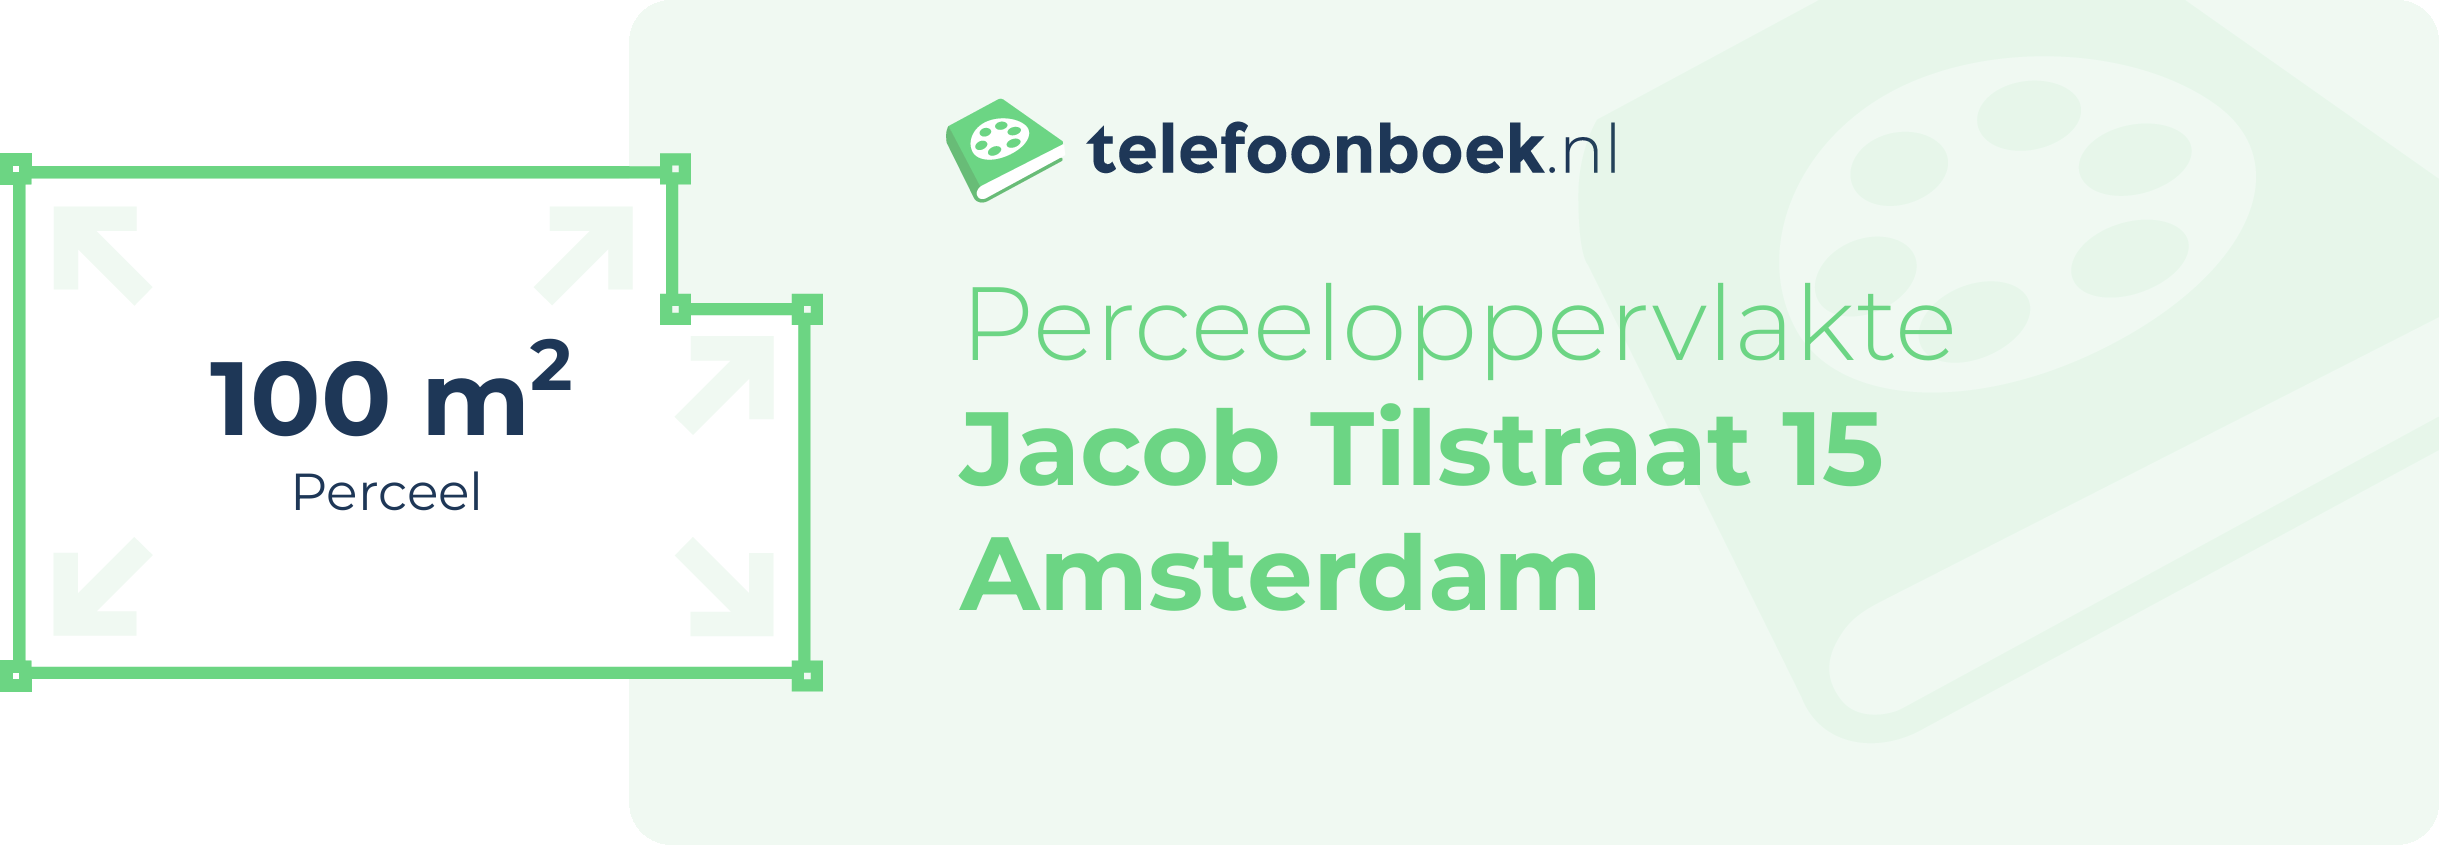 Perceeloppervlakte Jacob Tilstraat 15 Amsterdam